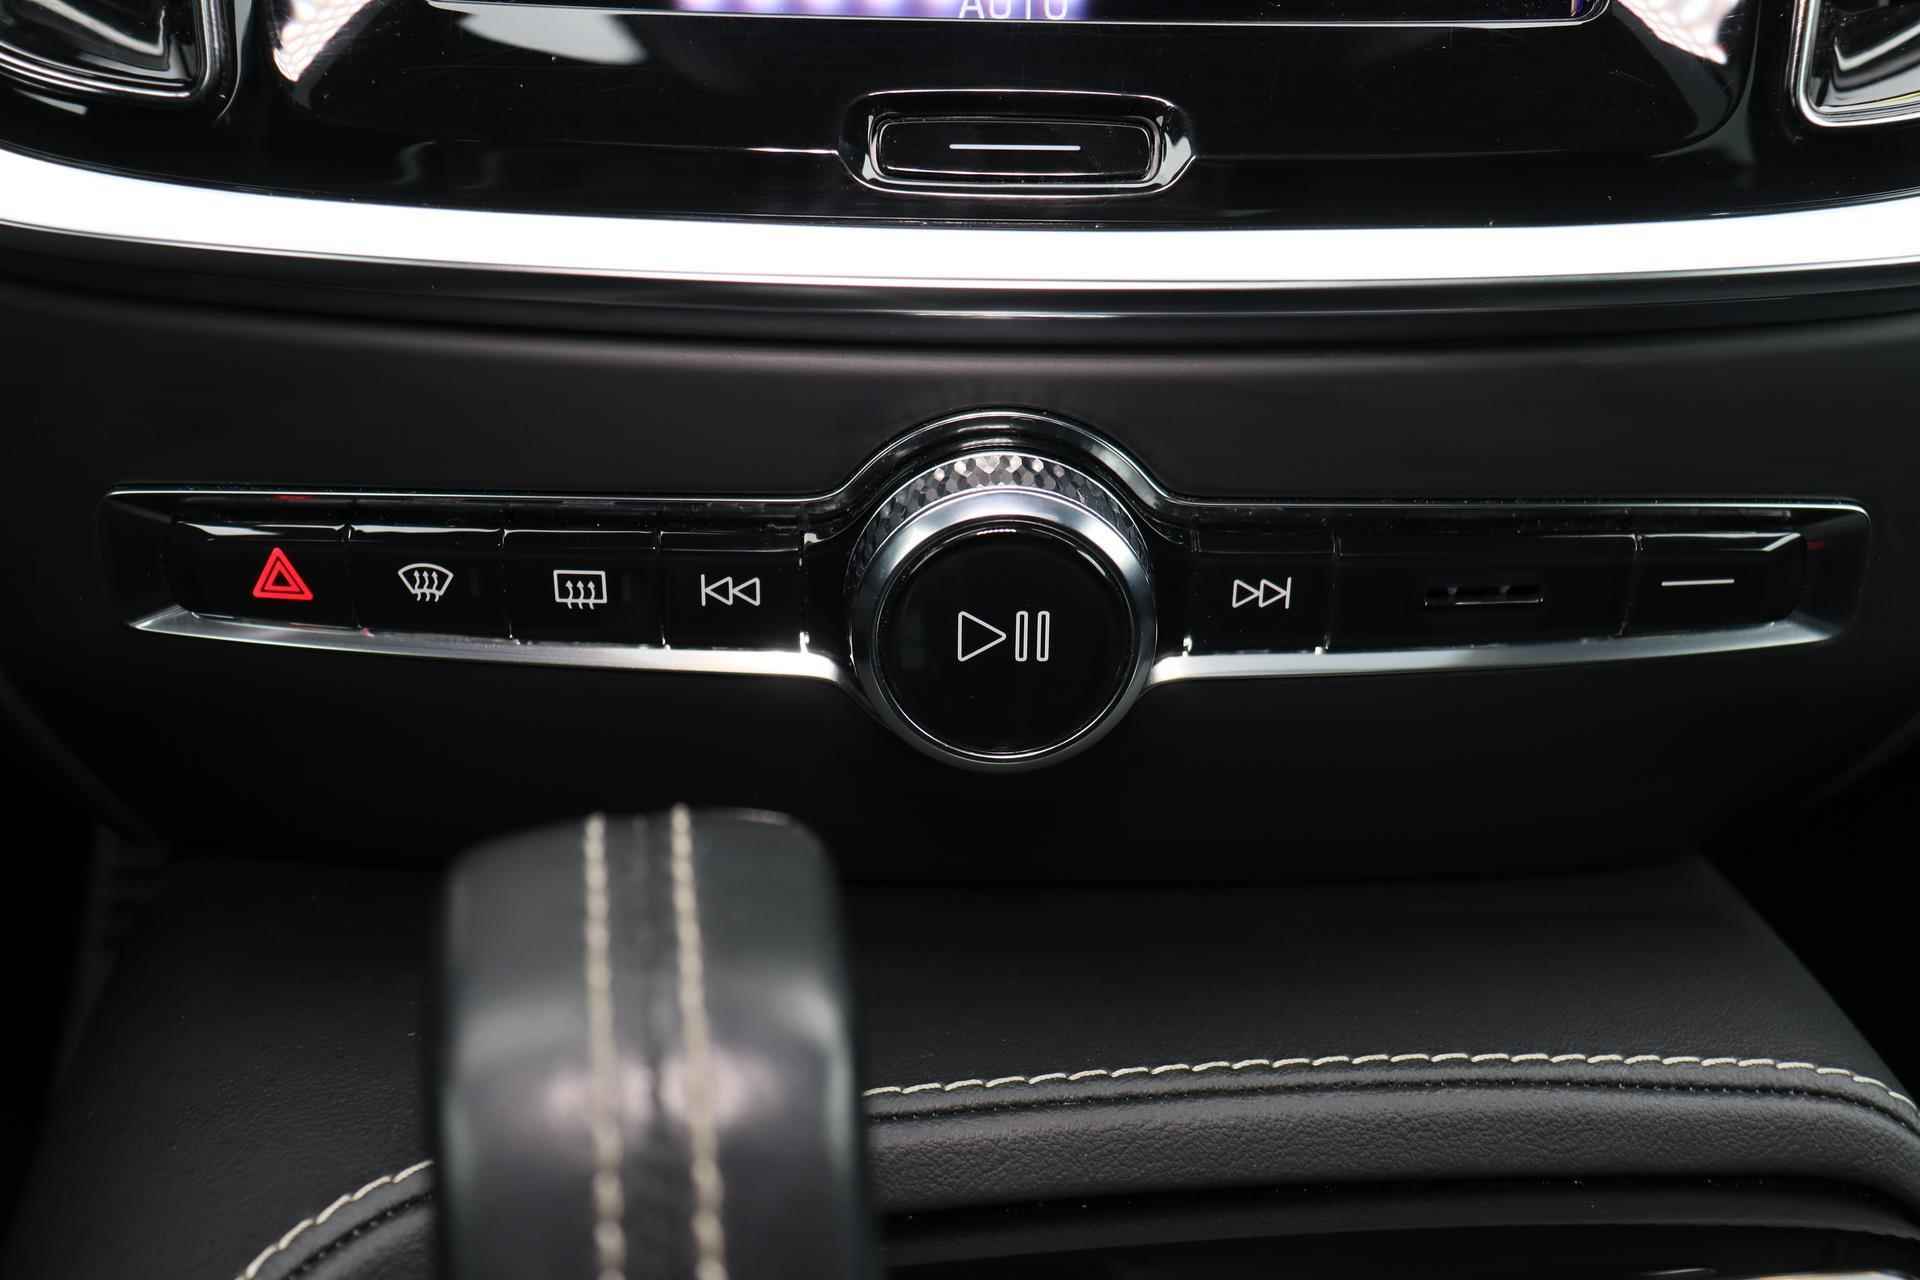 Volvo S60 Recharge T8 AWD R-Design - Panorama/schuifdak - IntelliSafe Assist - Harman/Kardon audio - 360º Camera - Adaptieve LED koplampen - Verwarmde voorstoelen, stuur & achterbank - Parkeersensoren voor & achter - Elektr. bedienb. voorstoelen met geheugen - Standkachel - 19' LMV - 12/28